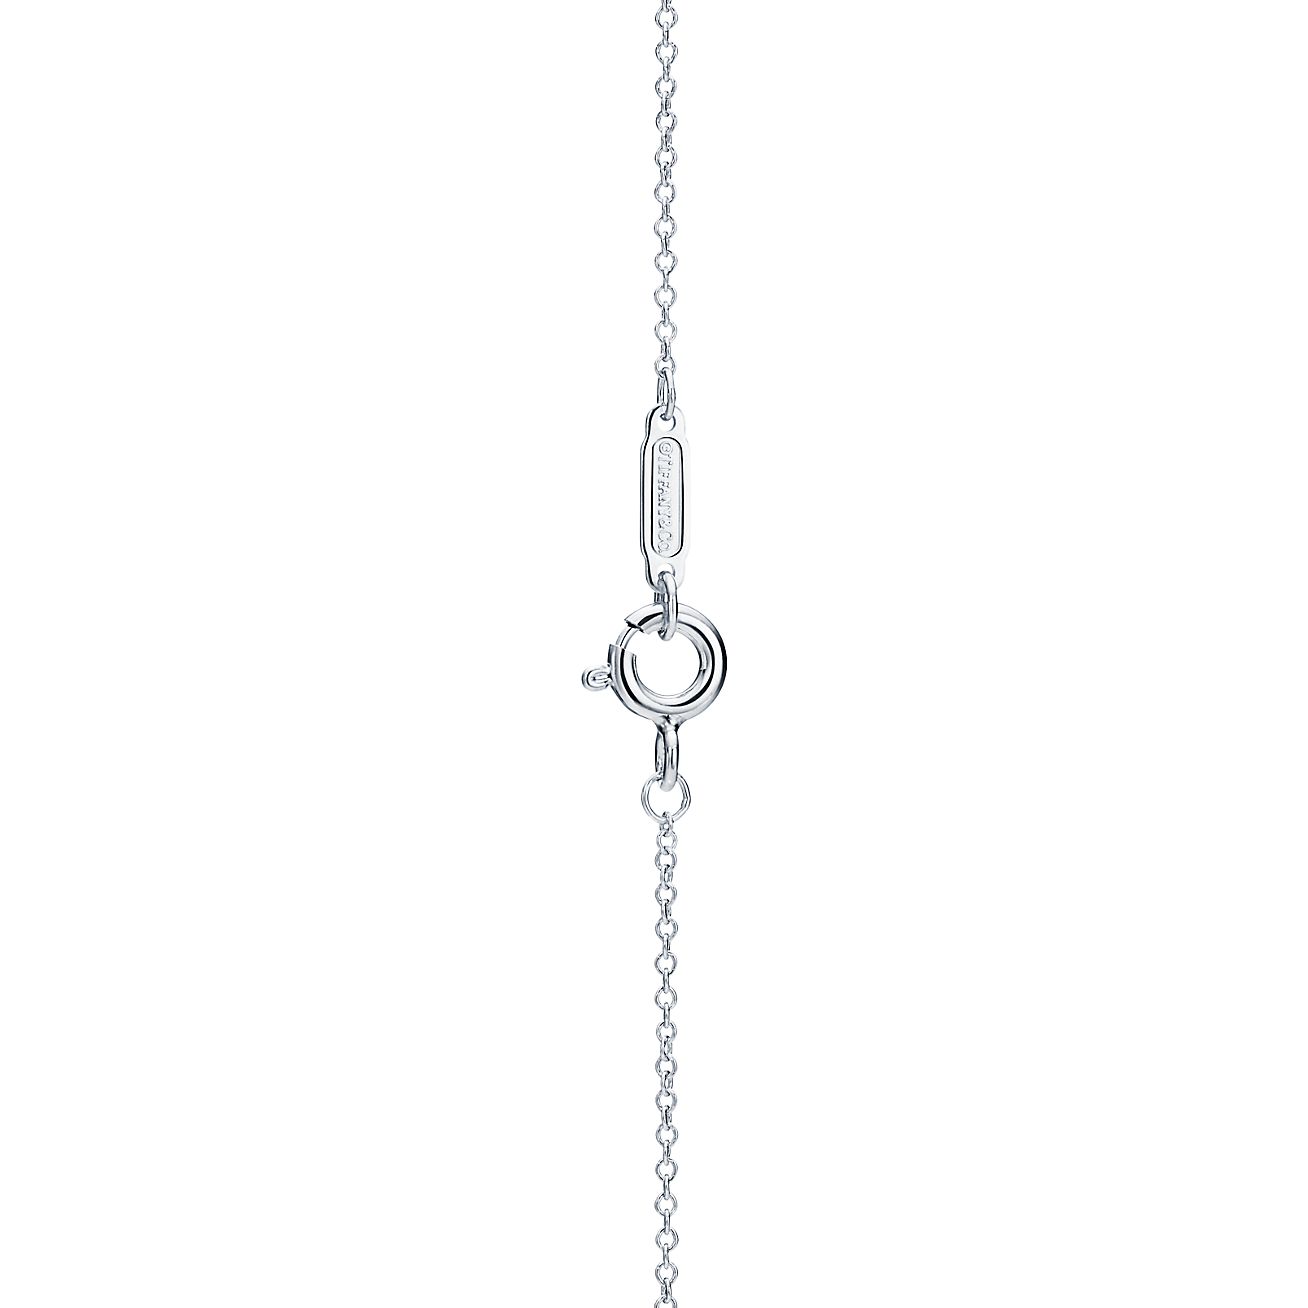 tiffany heart tag with key pendant